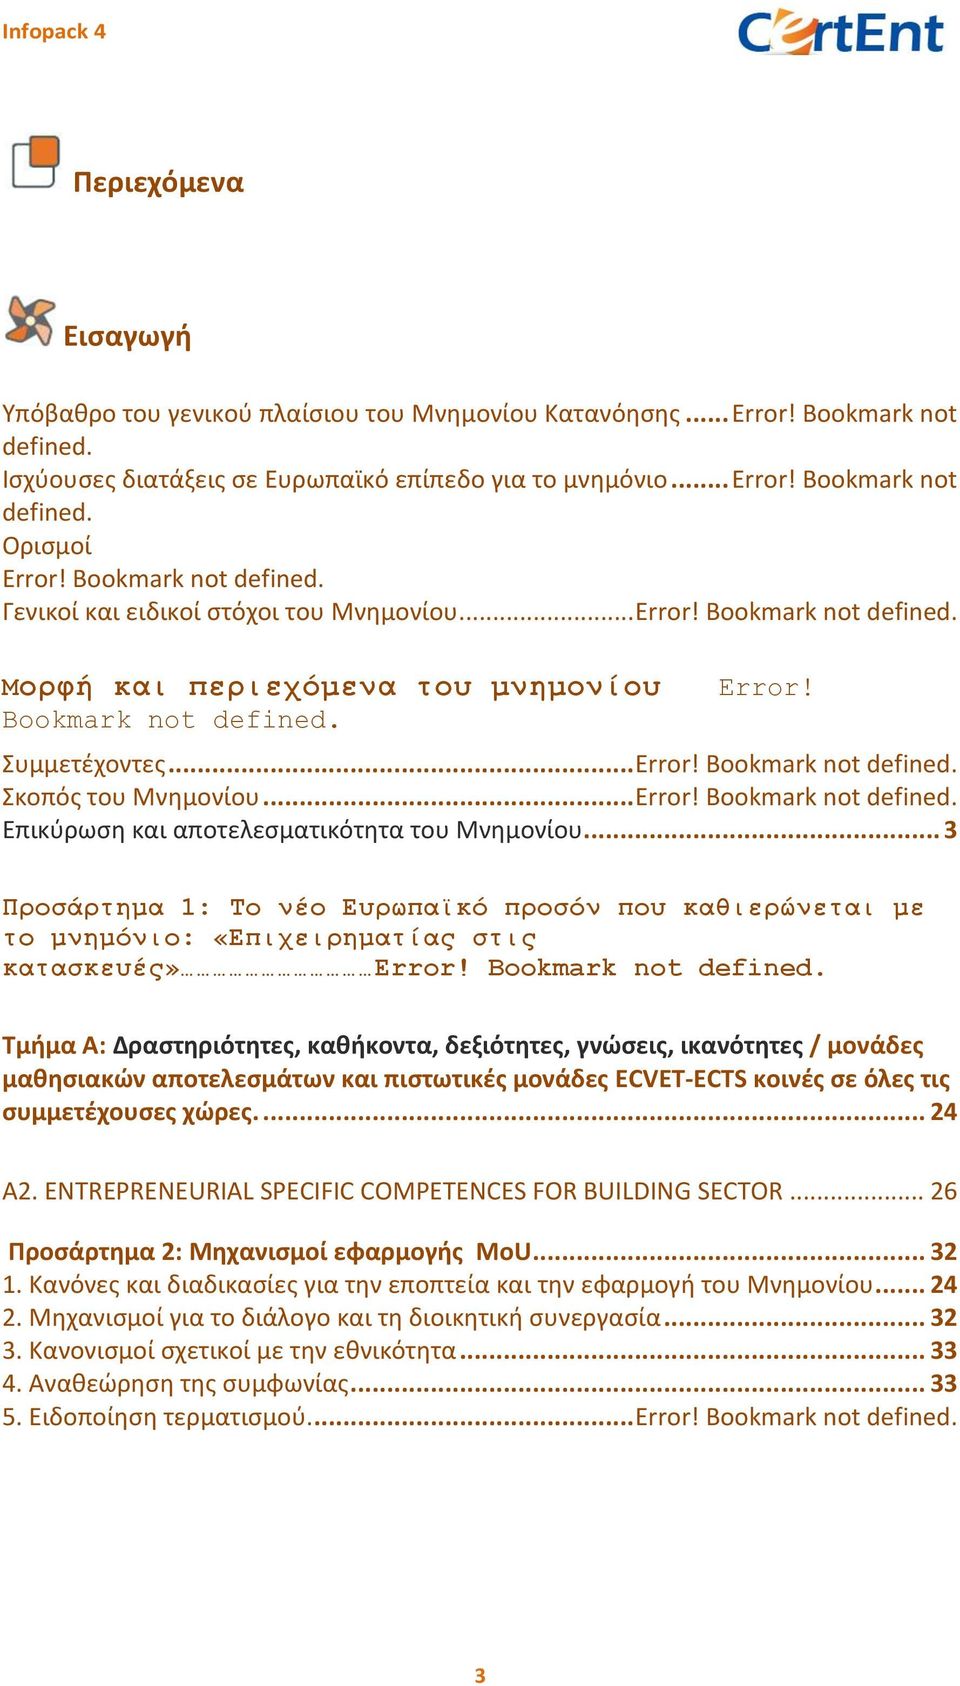 .. Error! Bookmark not defined. Επικύρωση και αποτελεσματικότητα του Μνημονίου... 3 Προσάρτημα 1: Το νέο Ευρωπαϊκό προσόν που καθιερώνεται με το μνημόνιο: «Επιχειρηματίας στις κατασκευές» Error!